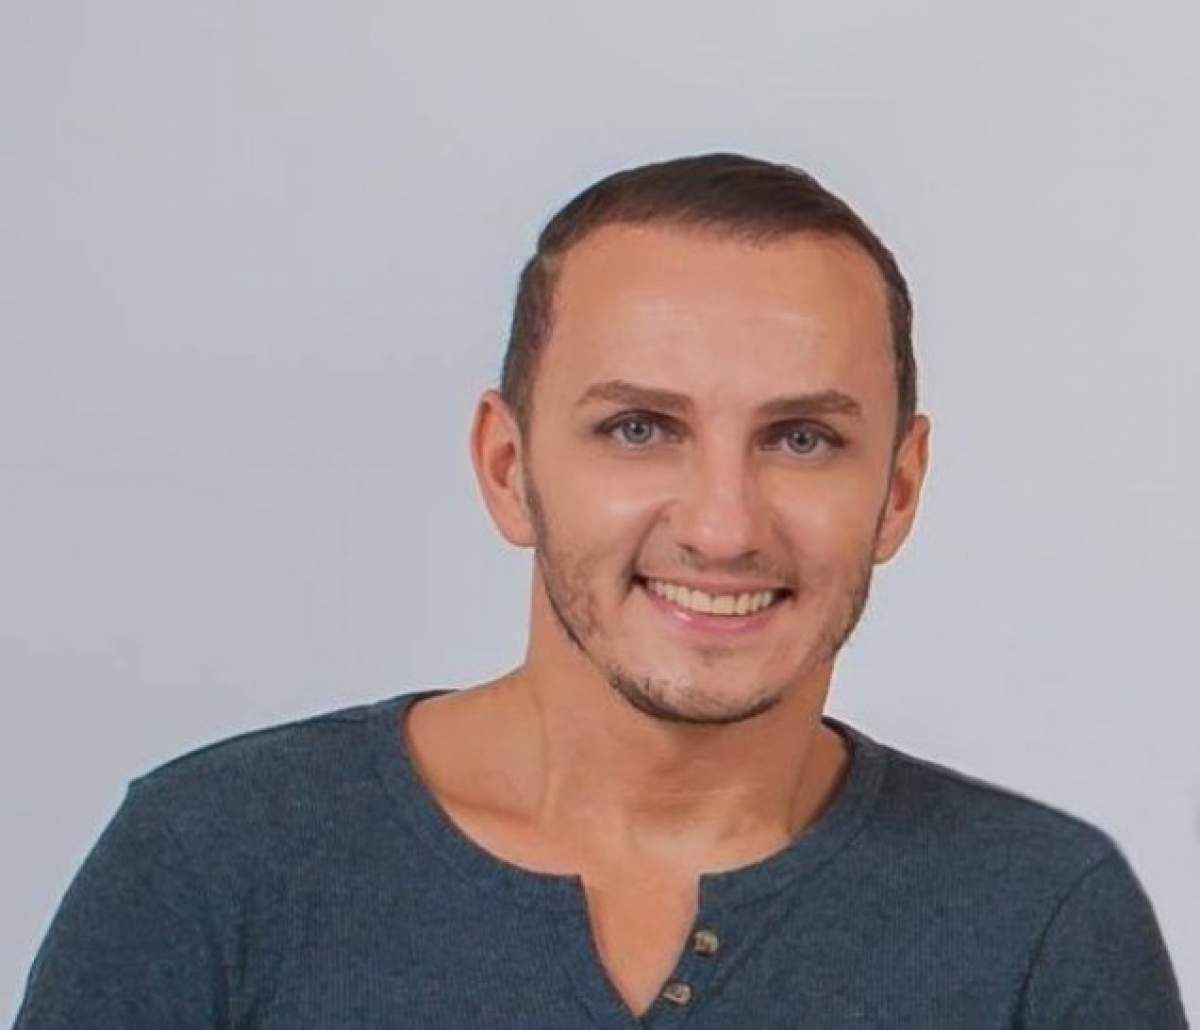 VIDEO / Mihai Trăistariu plănuieşte să se însoare? "Vreau mulţi copii"